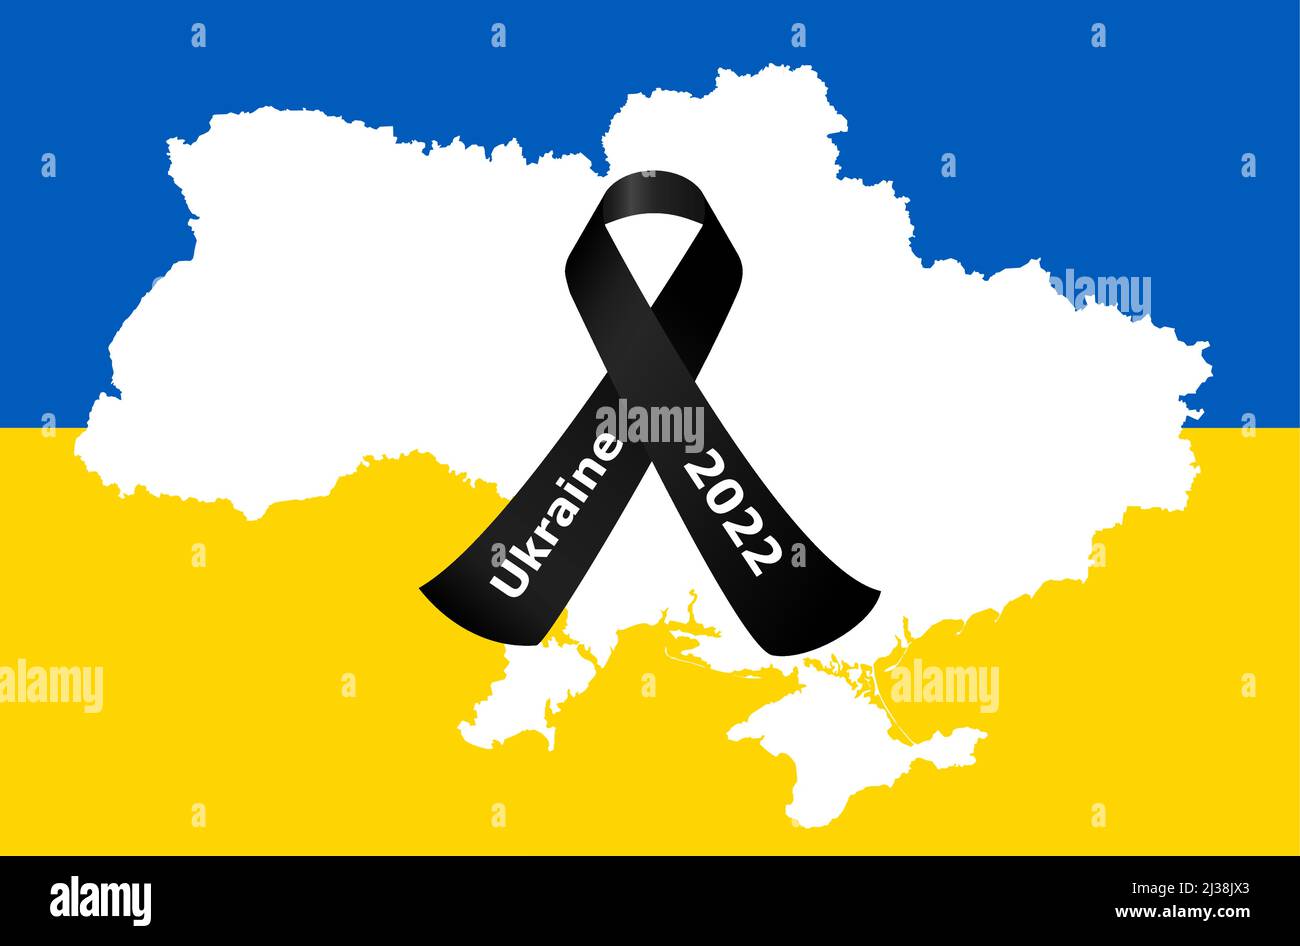 eps-Vektor-Illustration mit Silhouette des Landes ukraine mit Länderfarben und schwarzem Trauerband für den Krieg 2022 Stock Vektor